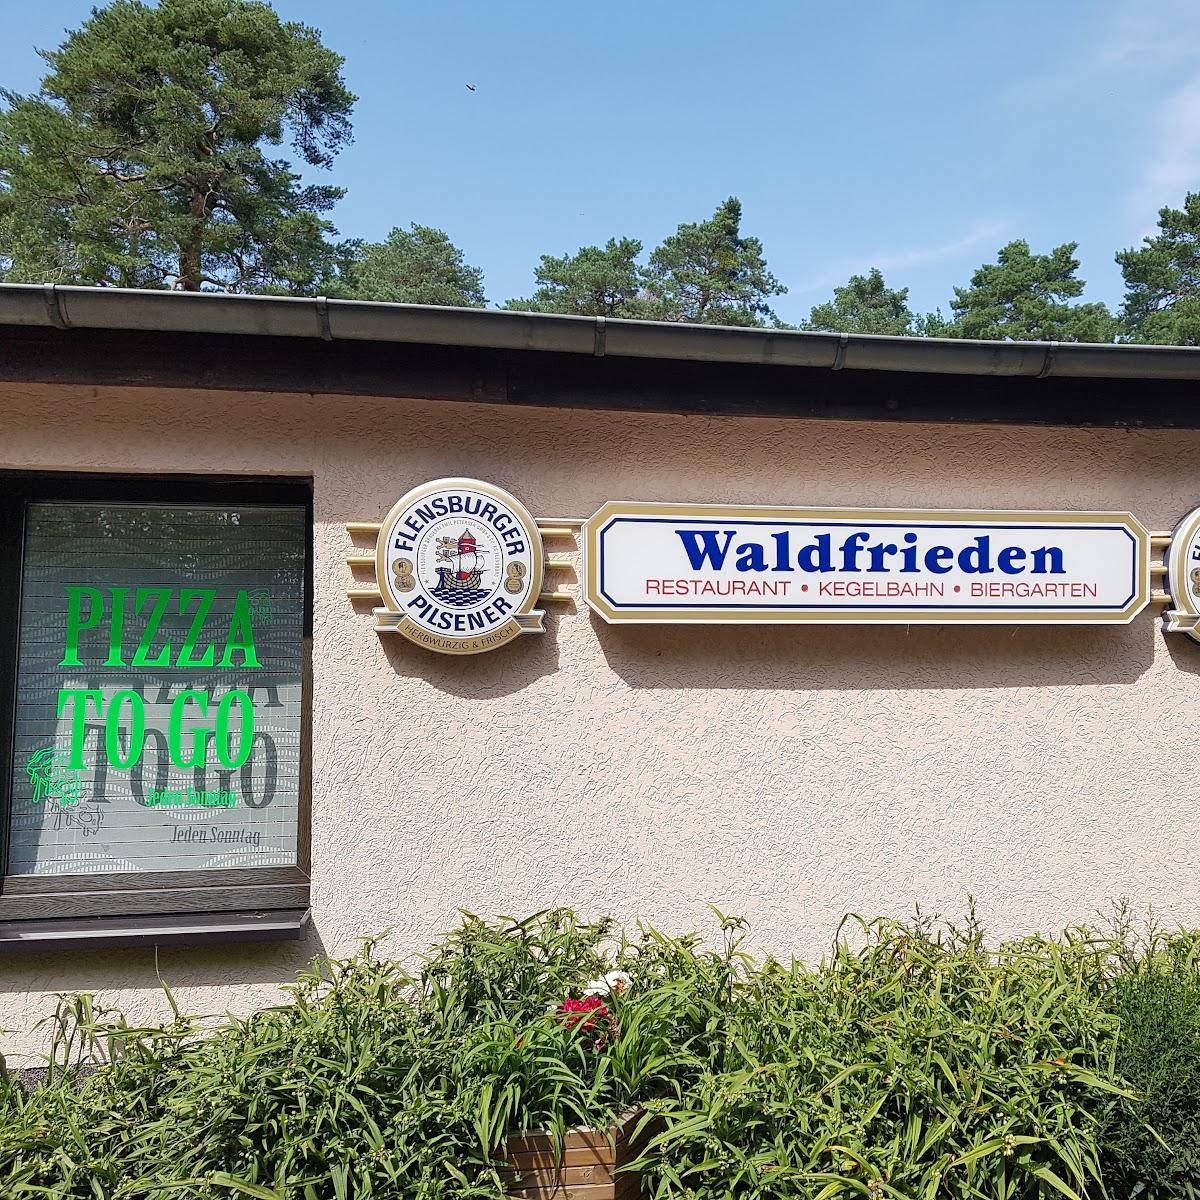 Restaurant "Restaurant  Waldfrieden  in Großwudicke" in Milower Land